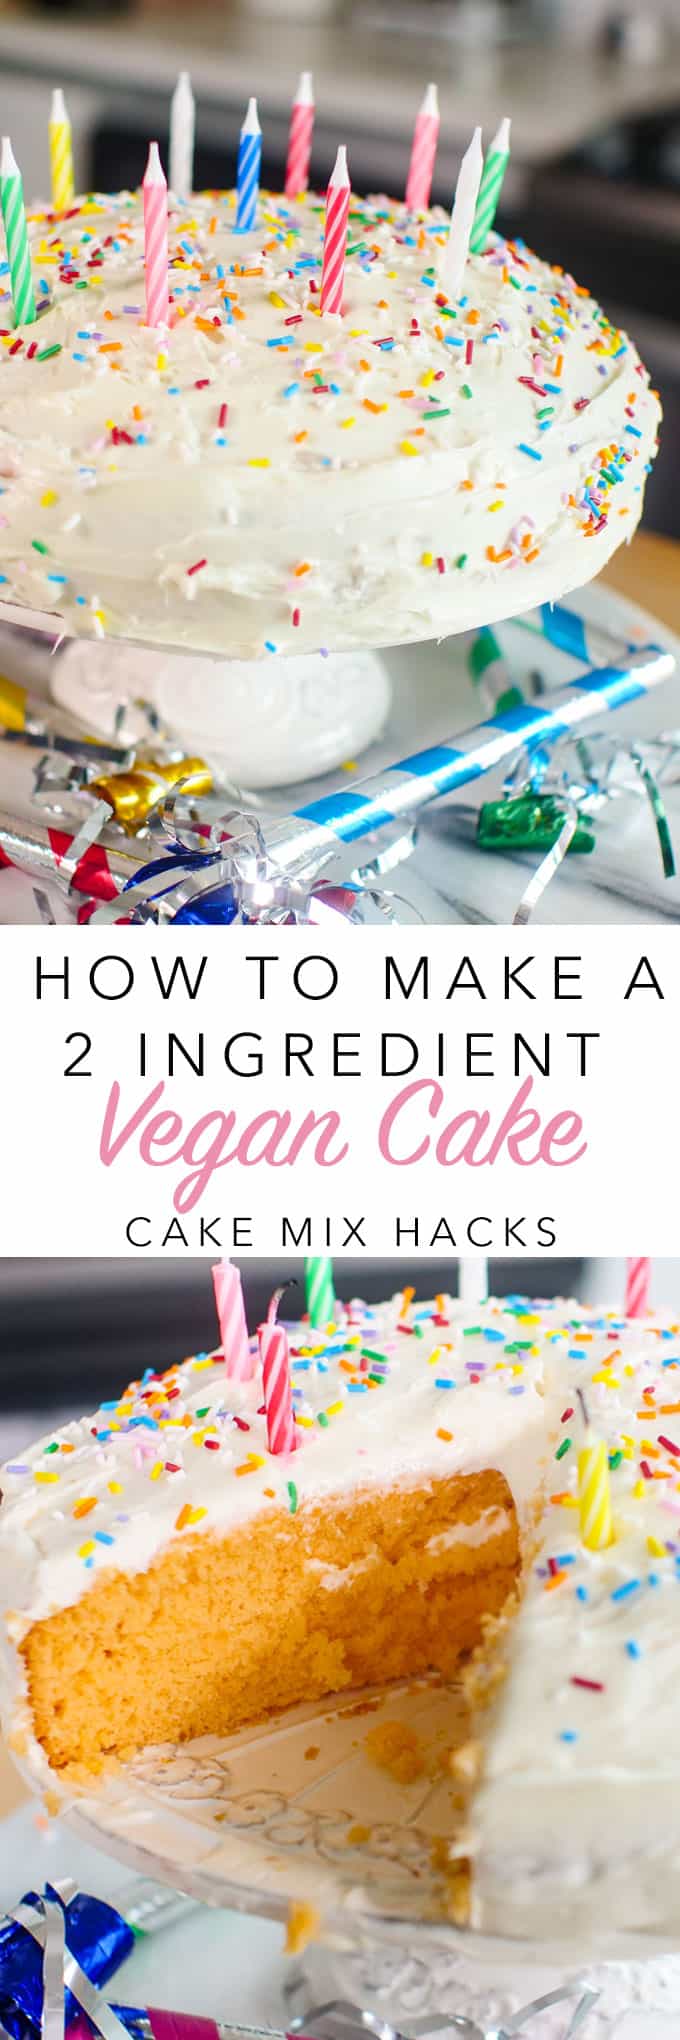 2 Ingredient Vegan Cake Pinterest